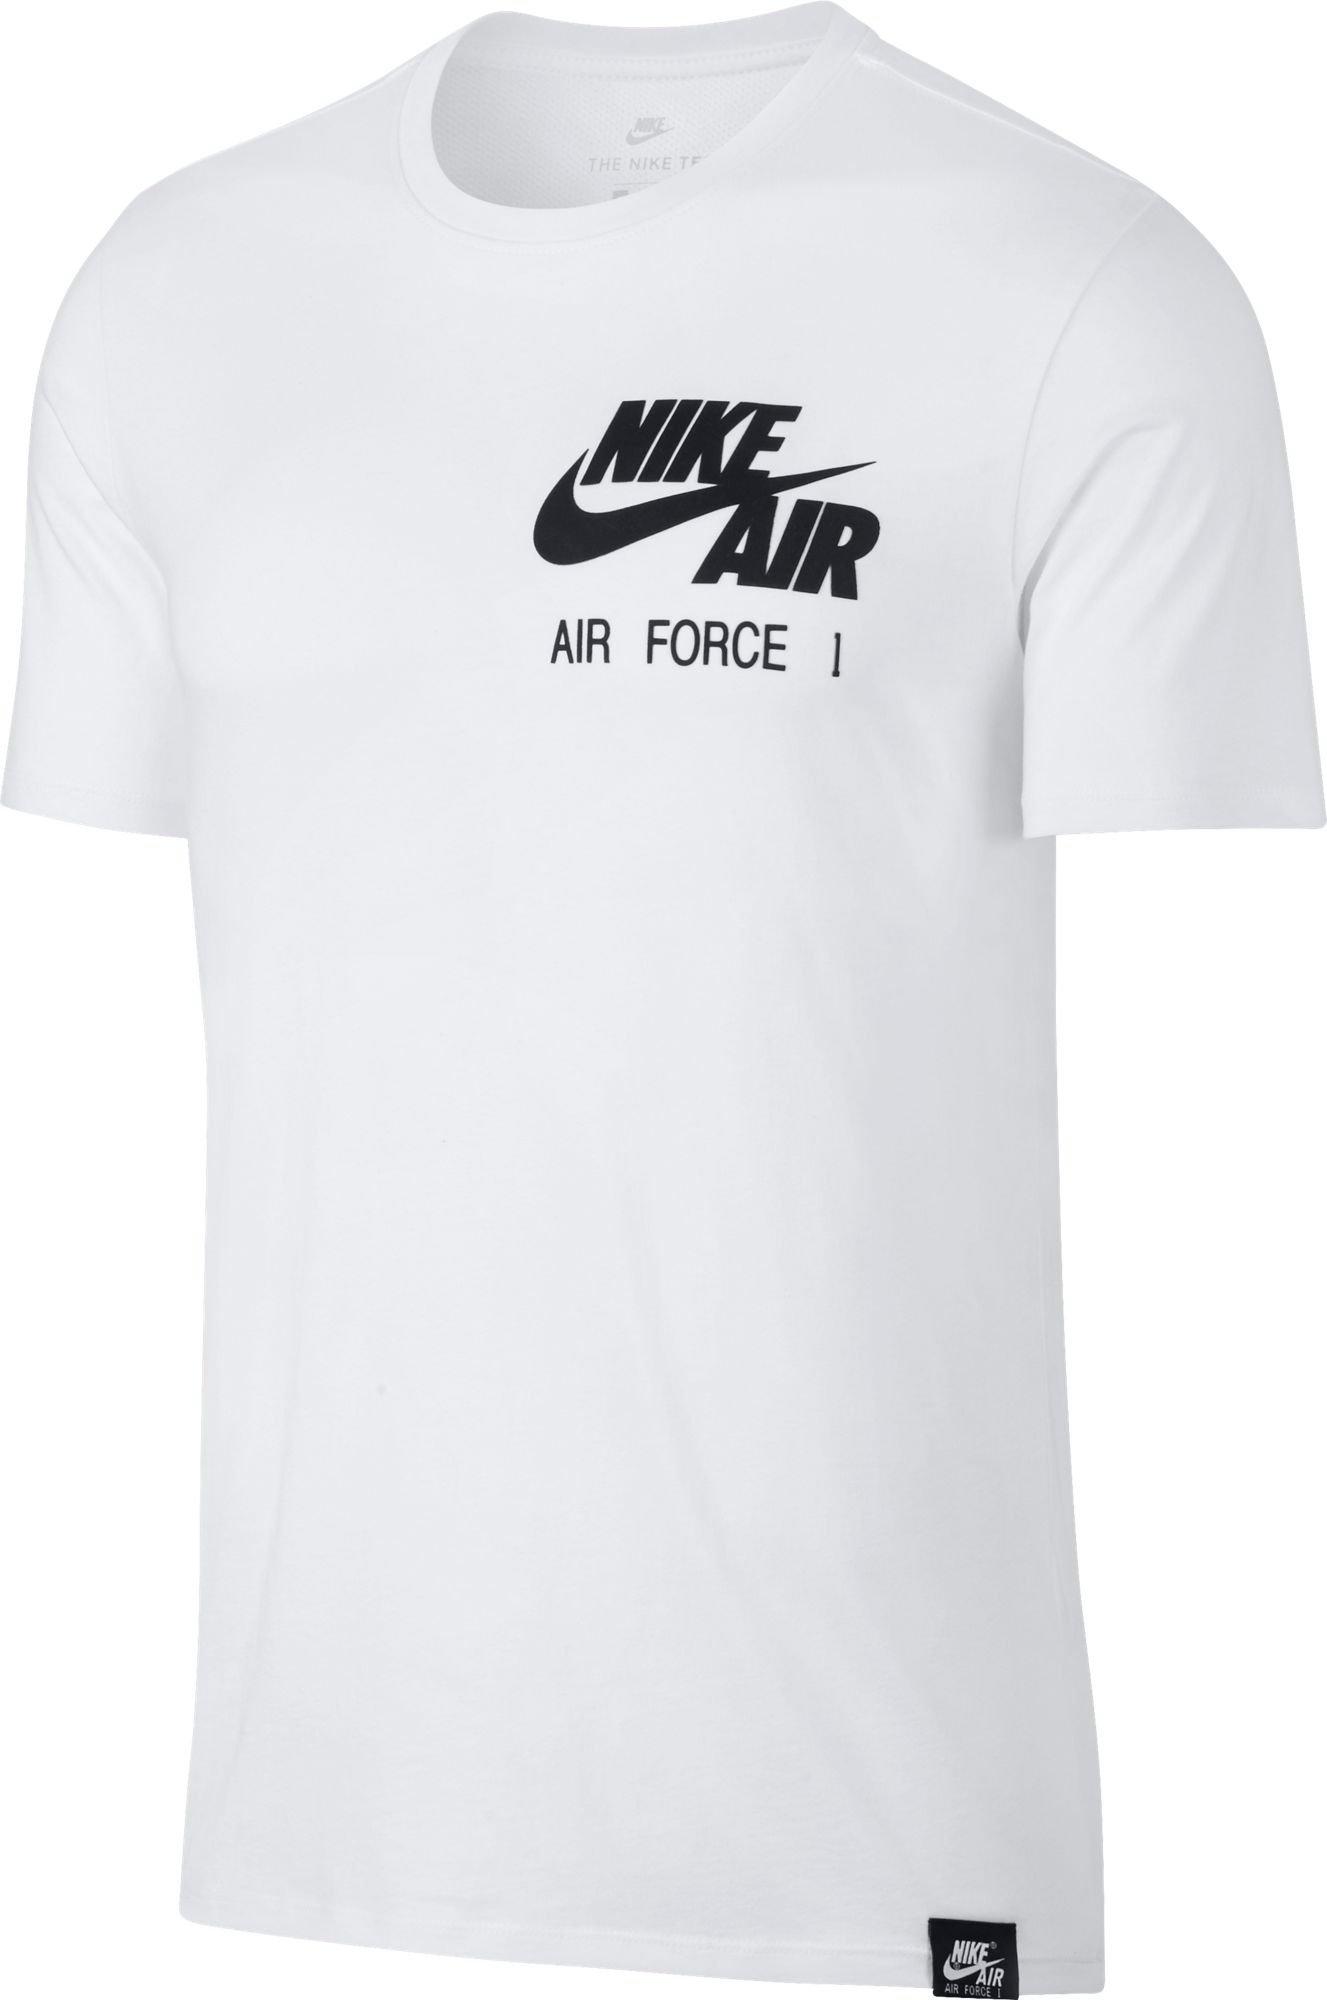 nike air force 1 lv8 shirts